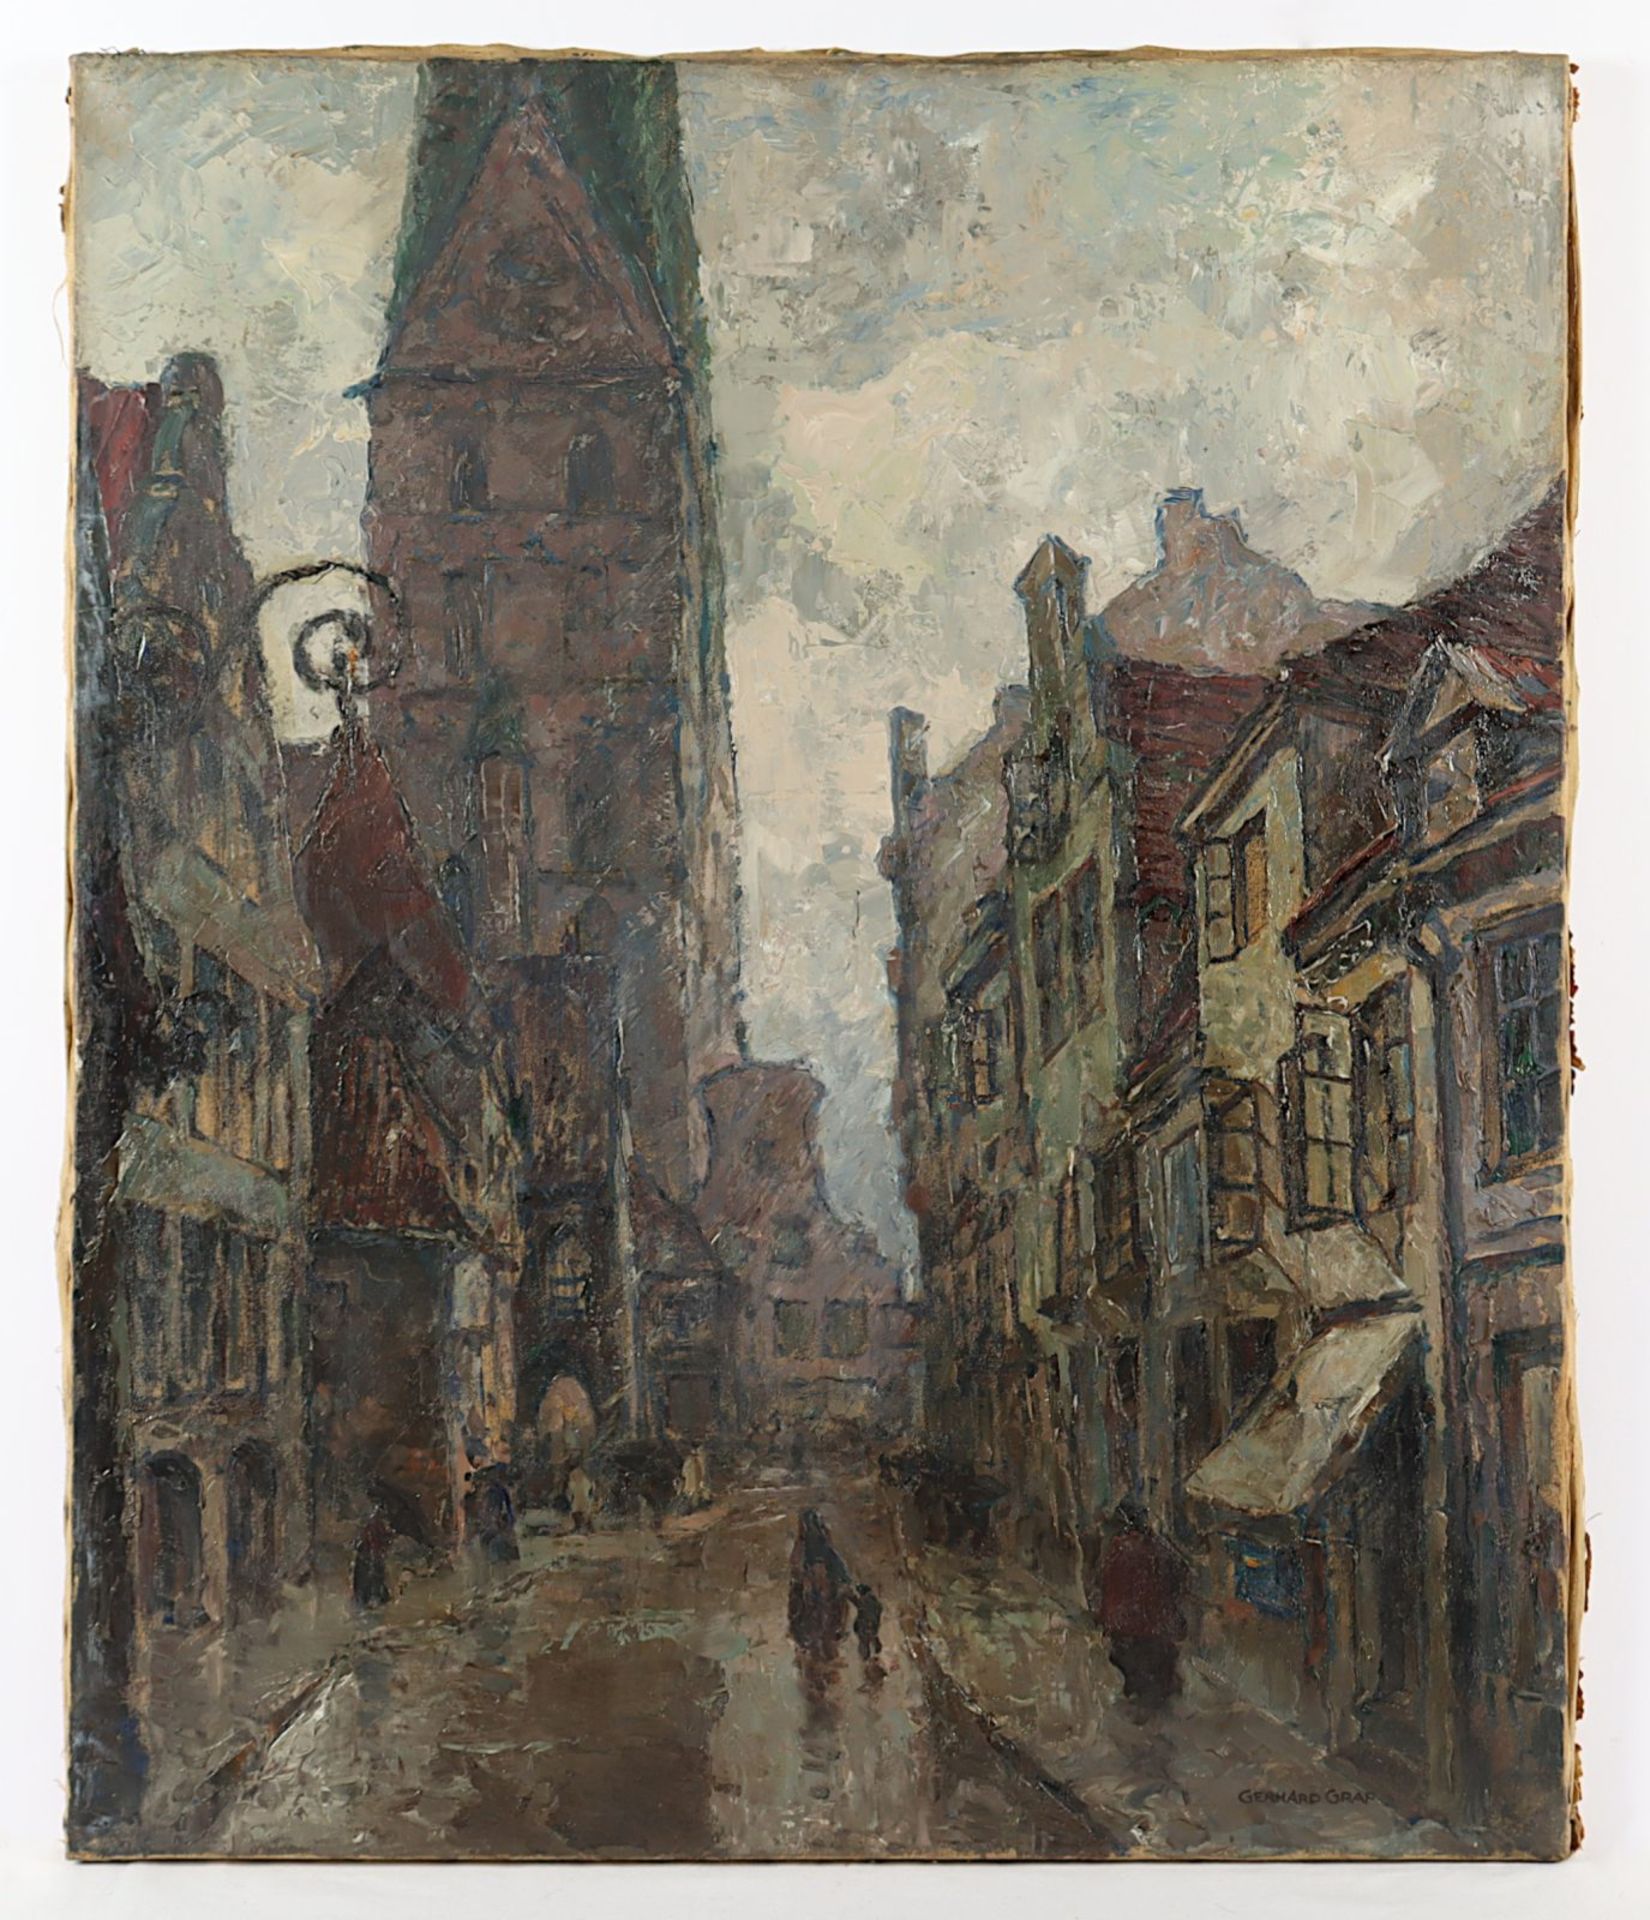 Graf, Gerhard (1883-1960), "Gasse in der Lübecker Altstadt"